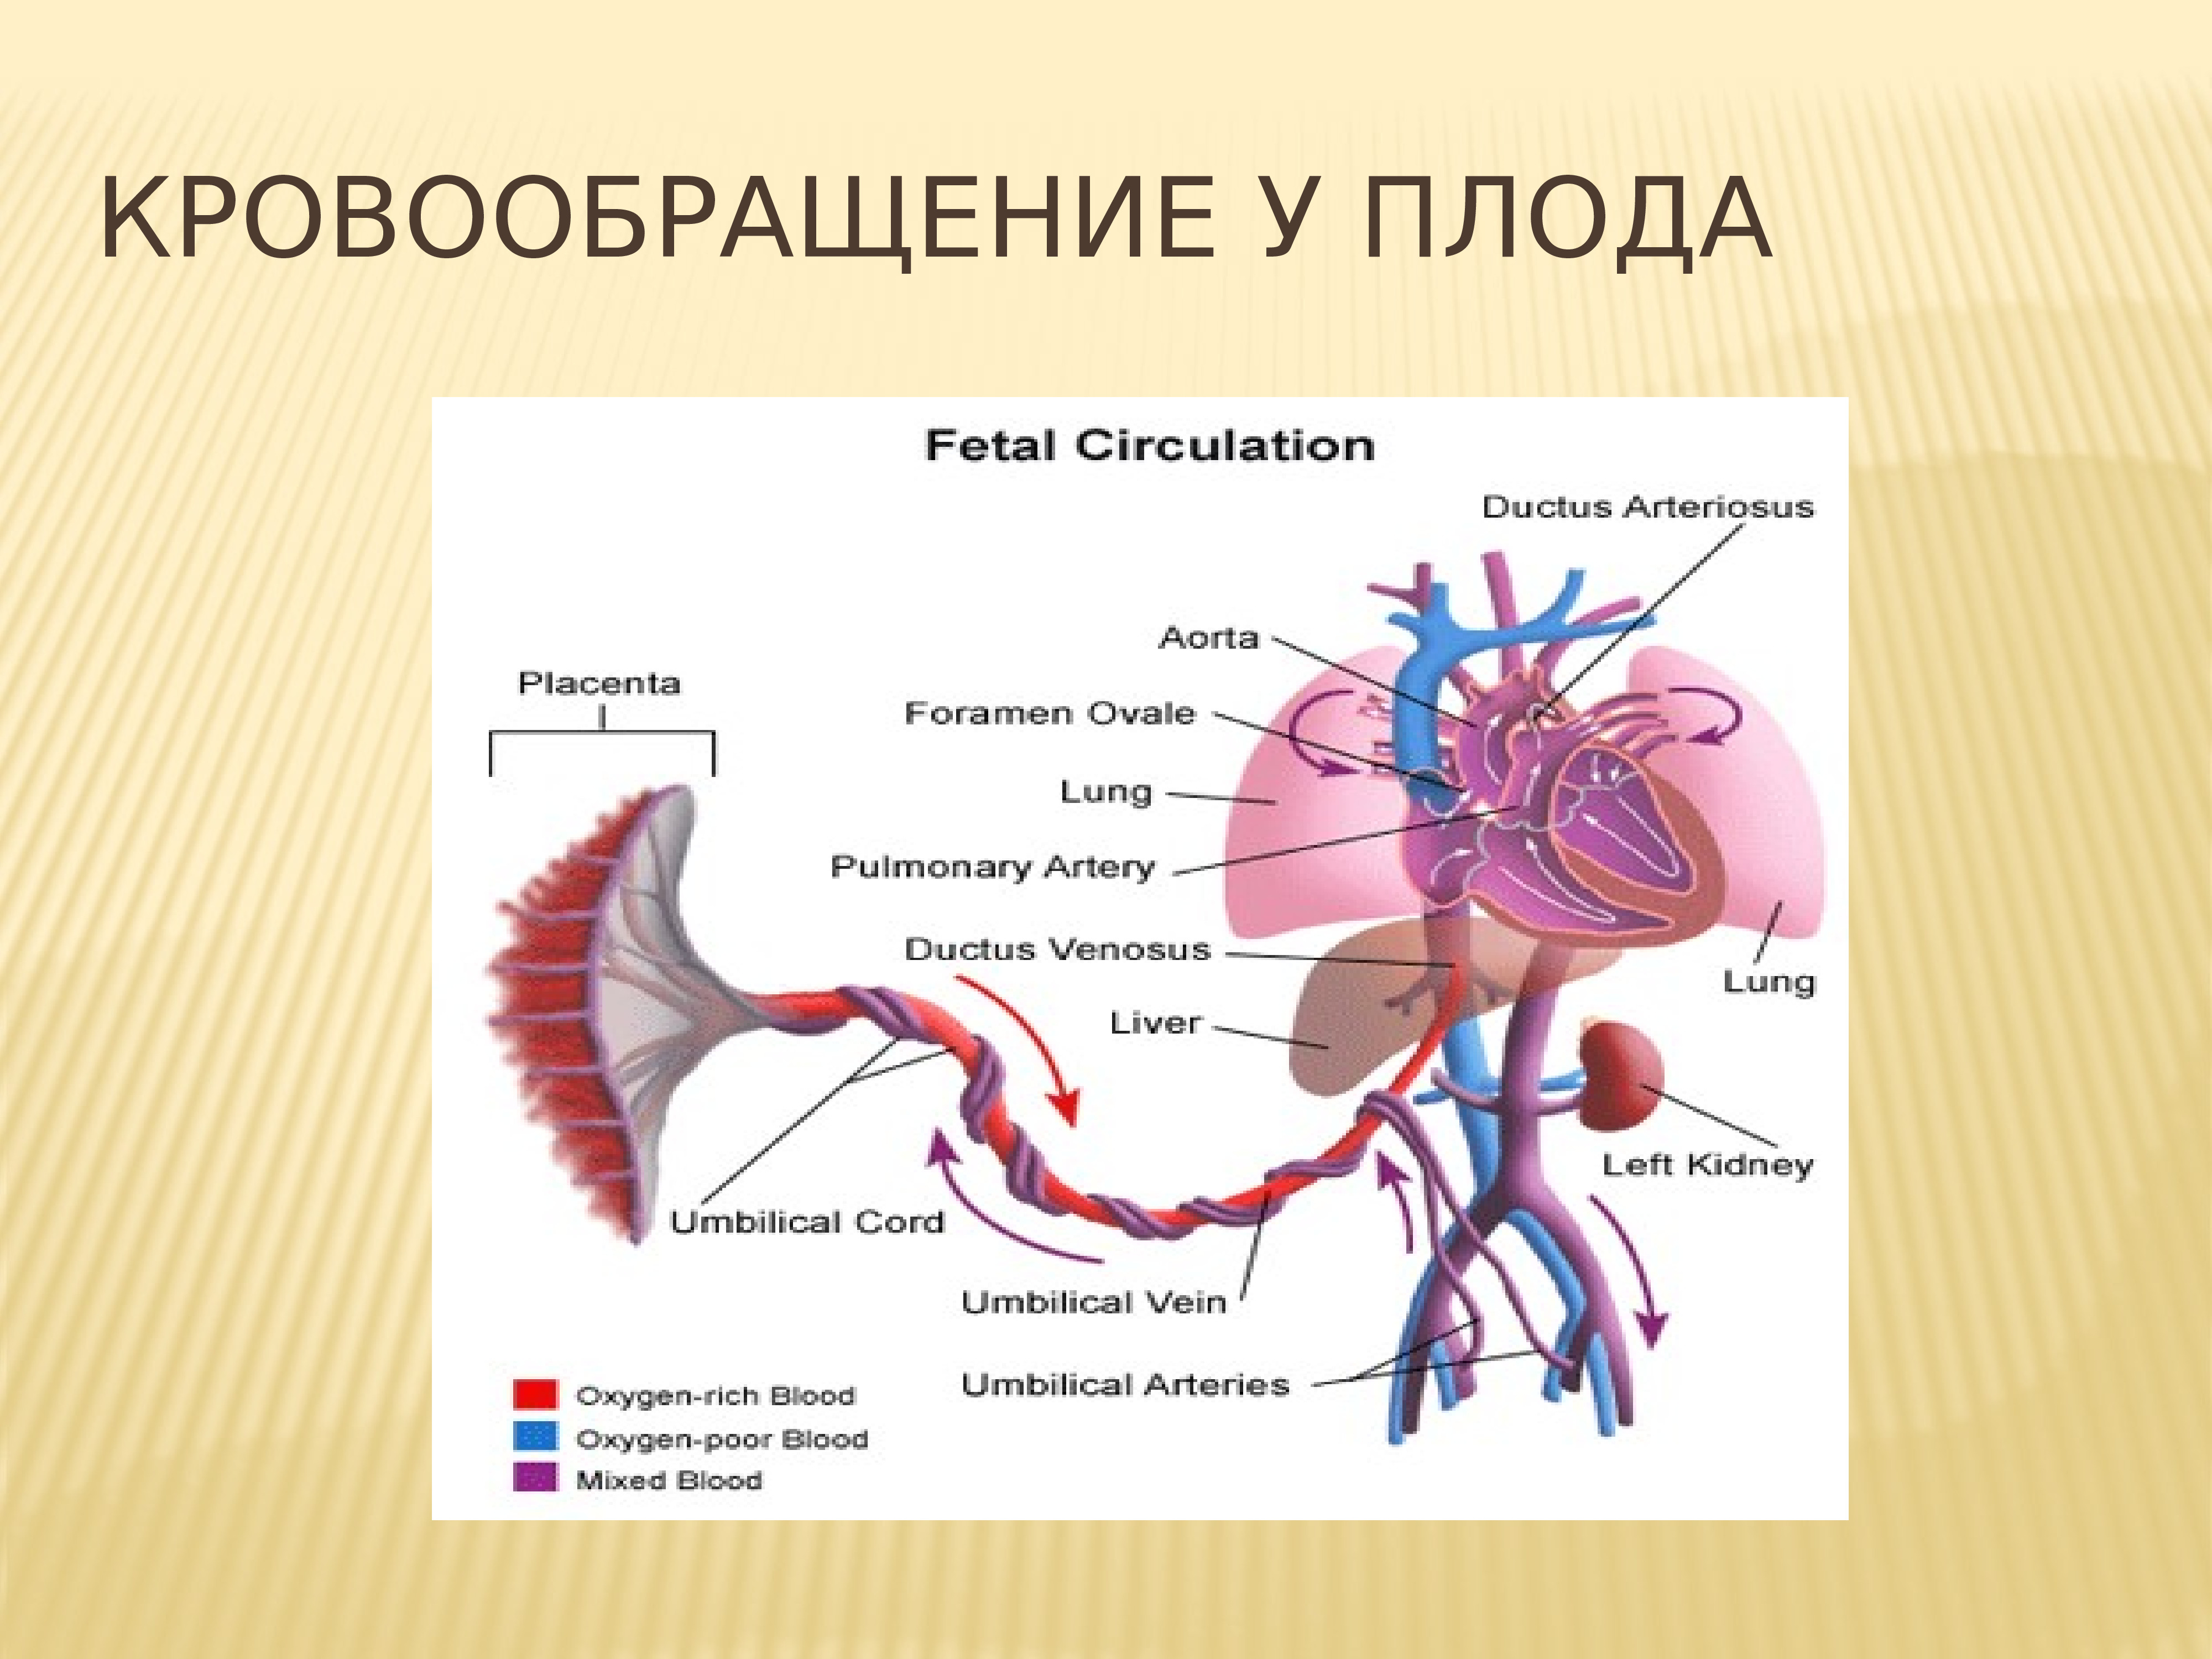 Плацентарный круг кровообращения. Внутриутробное кровообращение плода. Плацентарный круг кровообращения схема. Фетальное кровообращение схема. Кровообращение плода кратко.